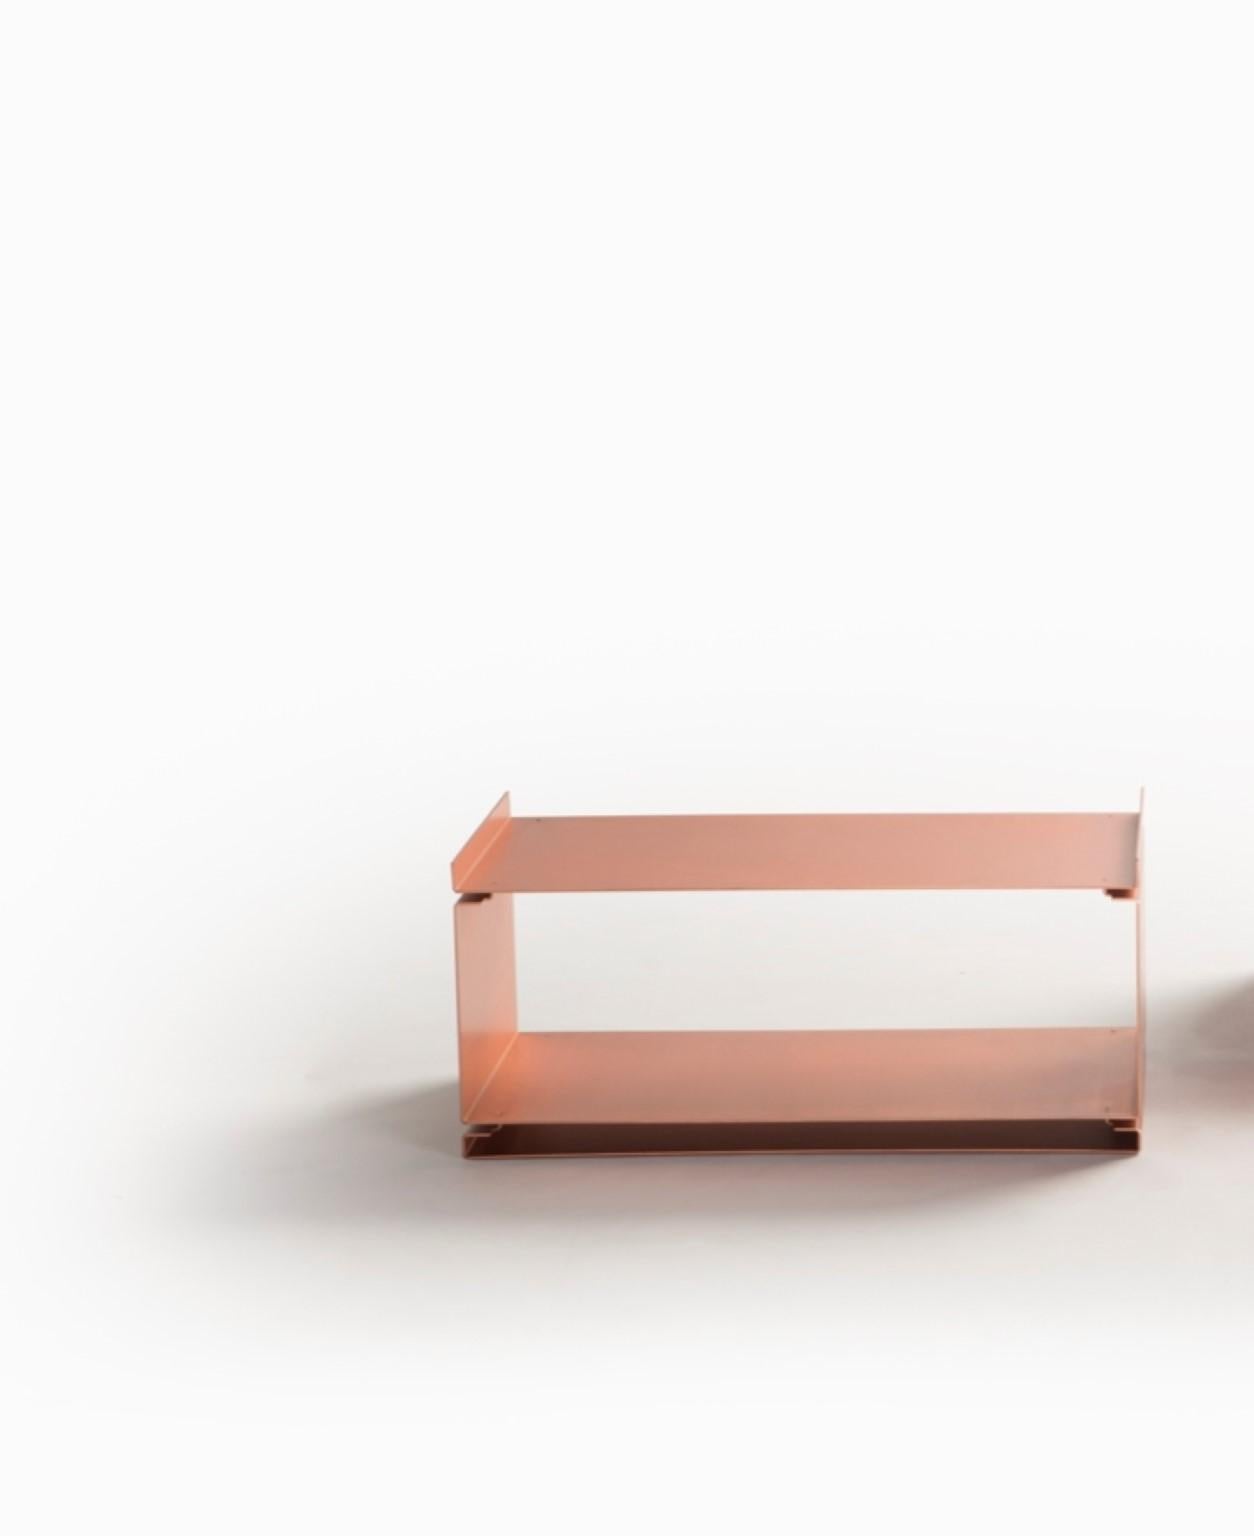 Table basse en or rose par SEM
Dimensions : L 70 x P 35 x H 30 cm
Matériau : Plaqué or rose poli ou brossé fin

SEM est une nouvelle marque de mobilier d'intérieur, conçue et produite en Italie. L'exposition en avant-première à la semaine du design